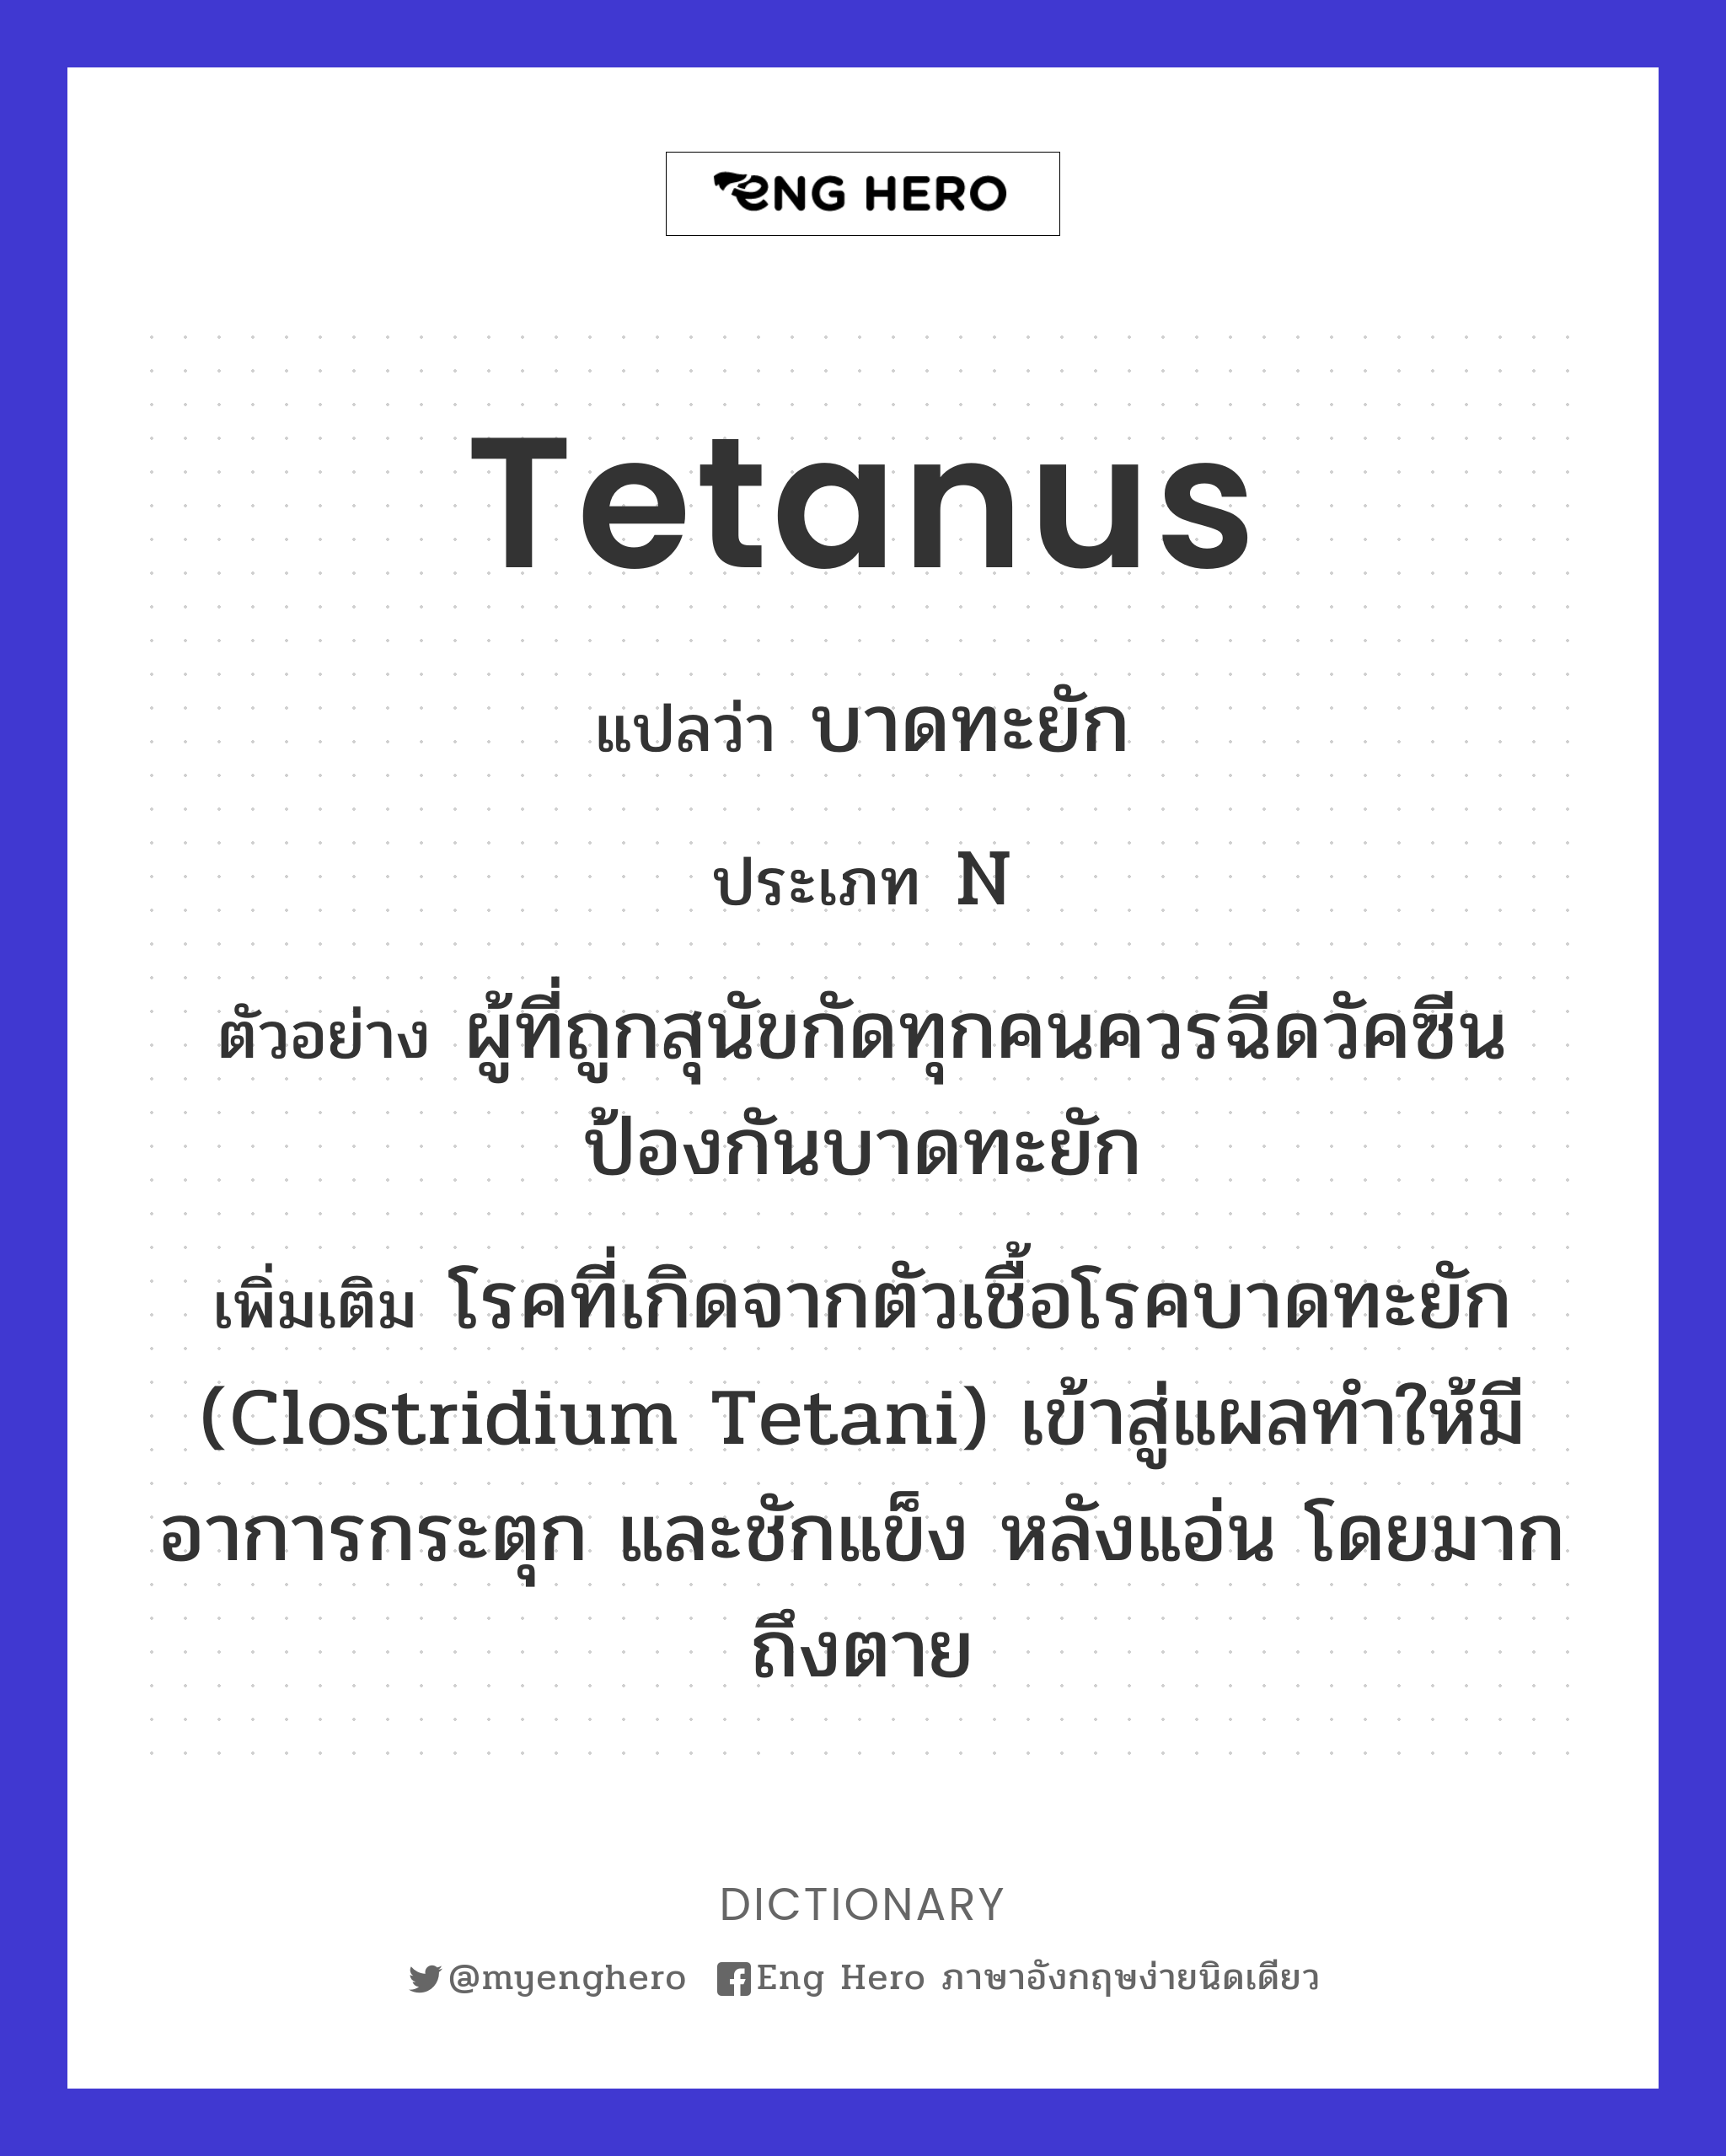 tetanus